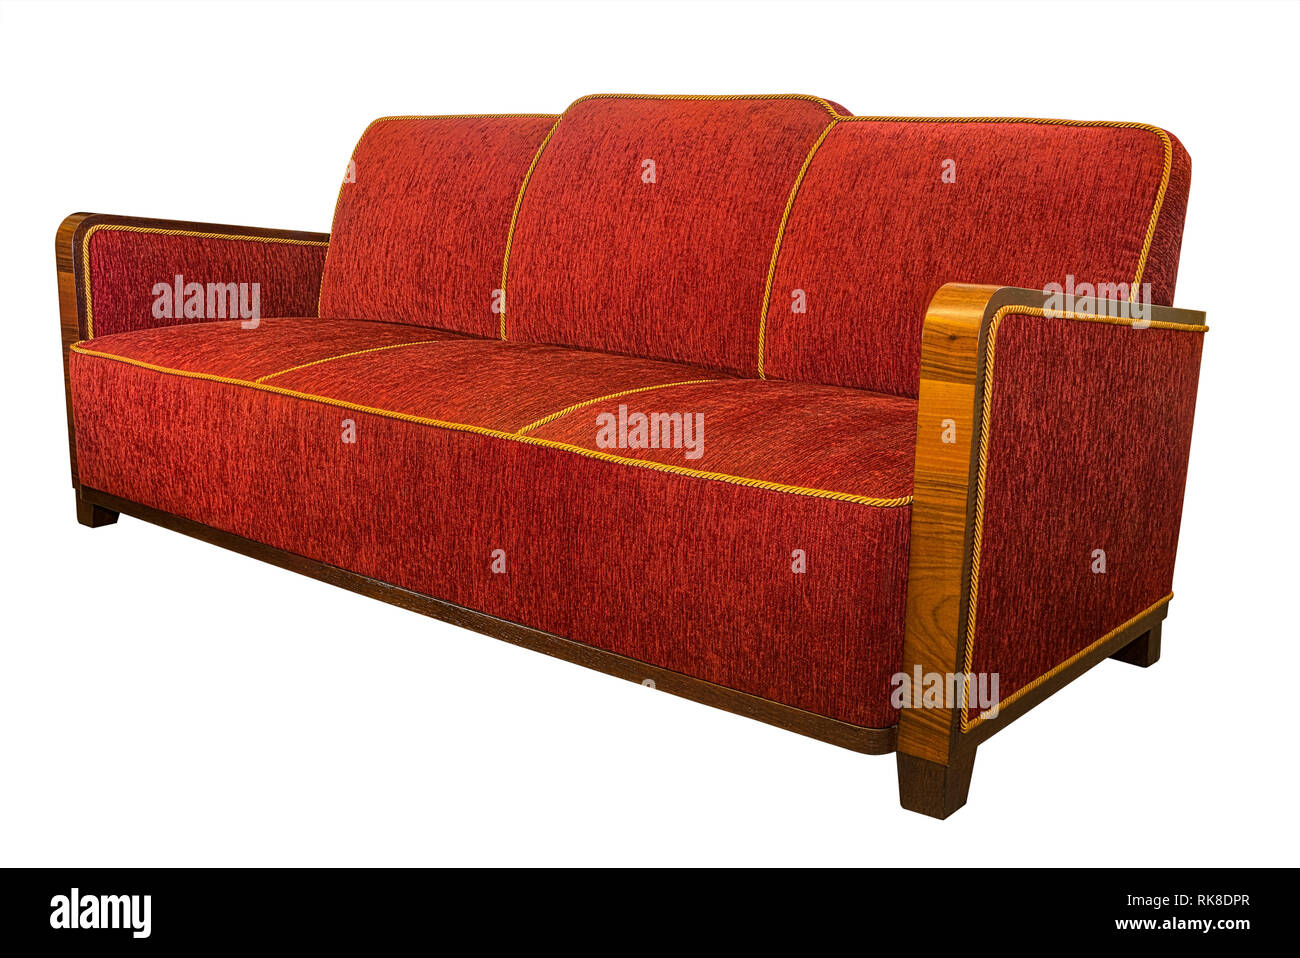 Style Art déco meubles fauteuil rouge canapé avec accoudoirs en bois angulaire typique isolated on white Banque D'Images